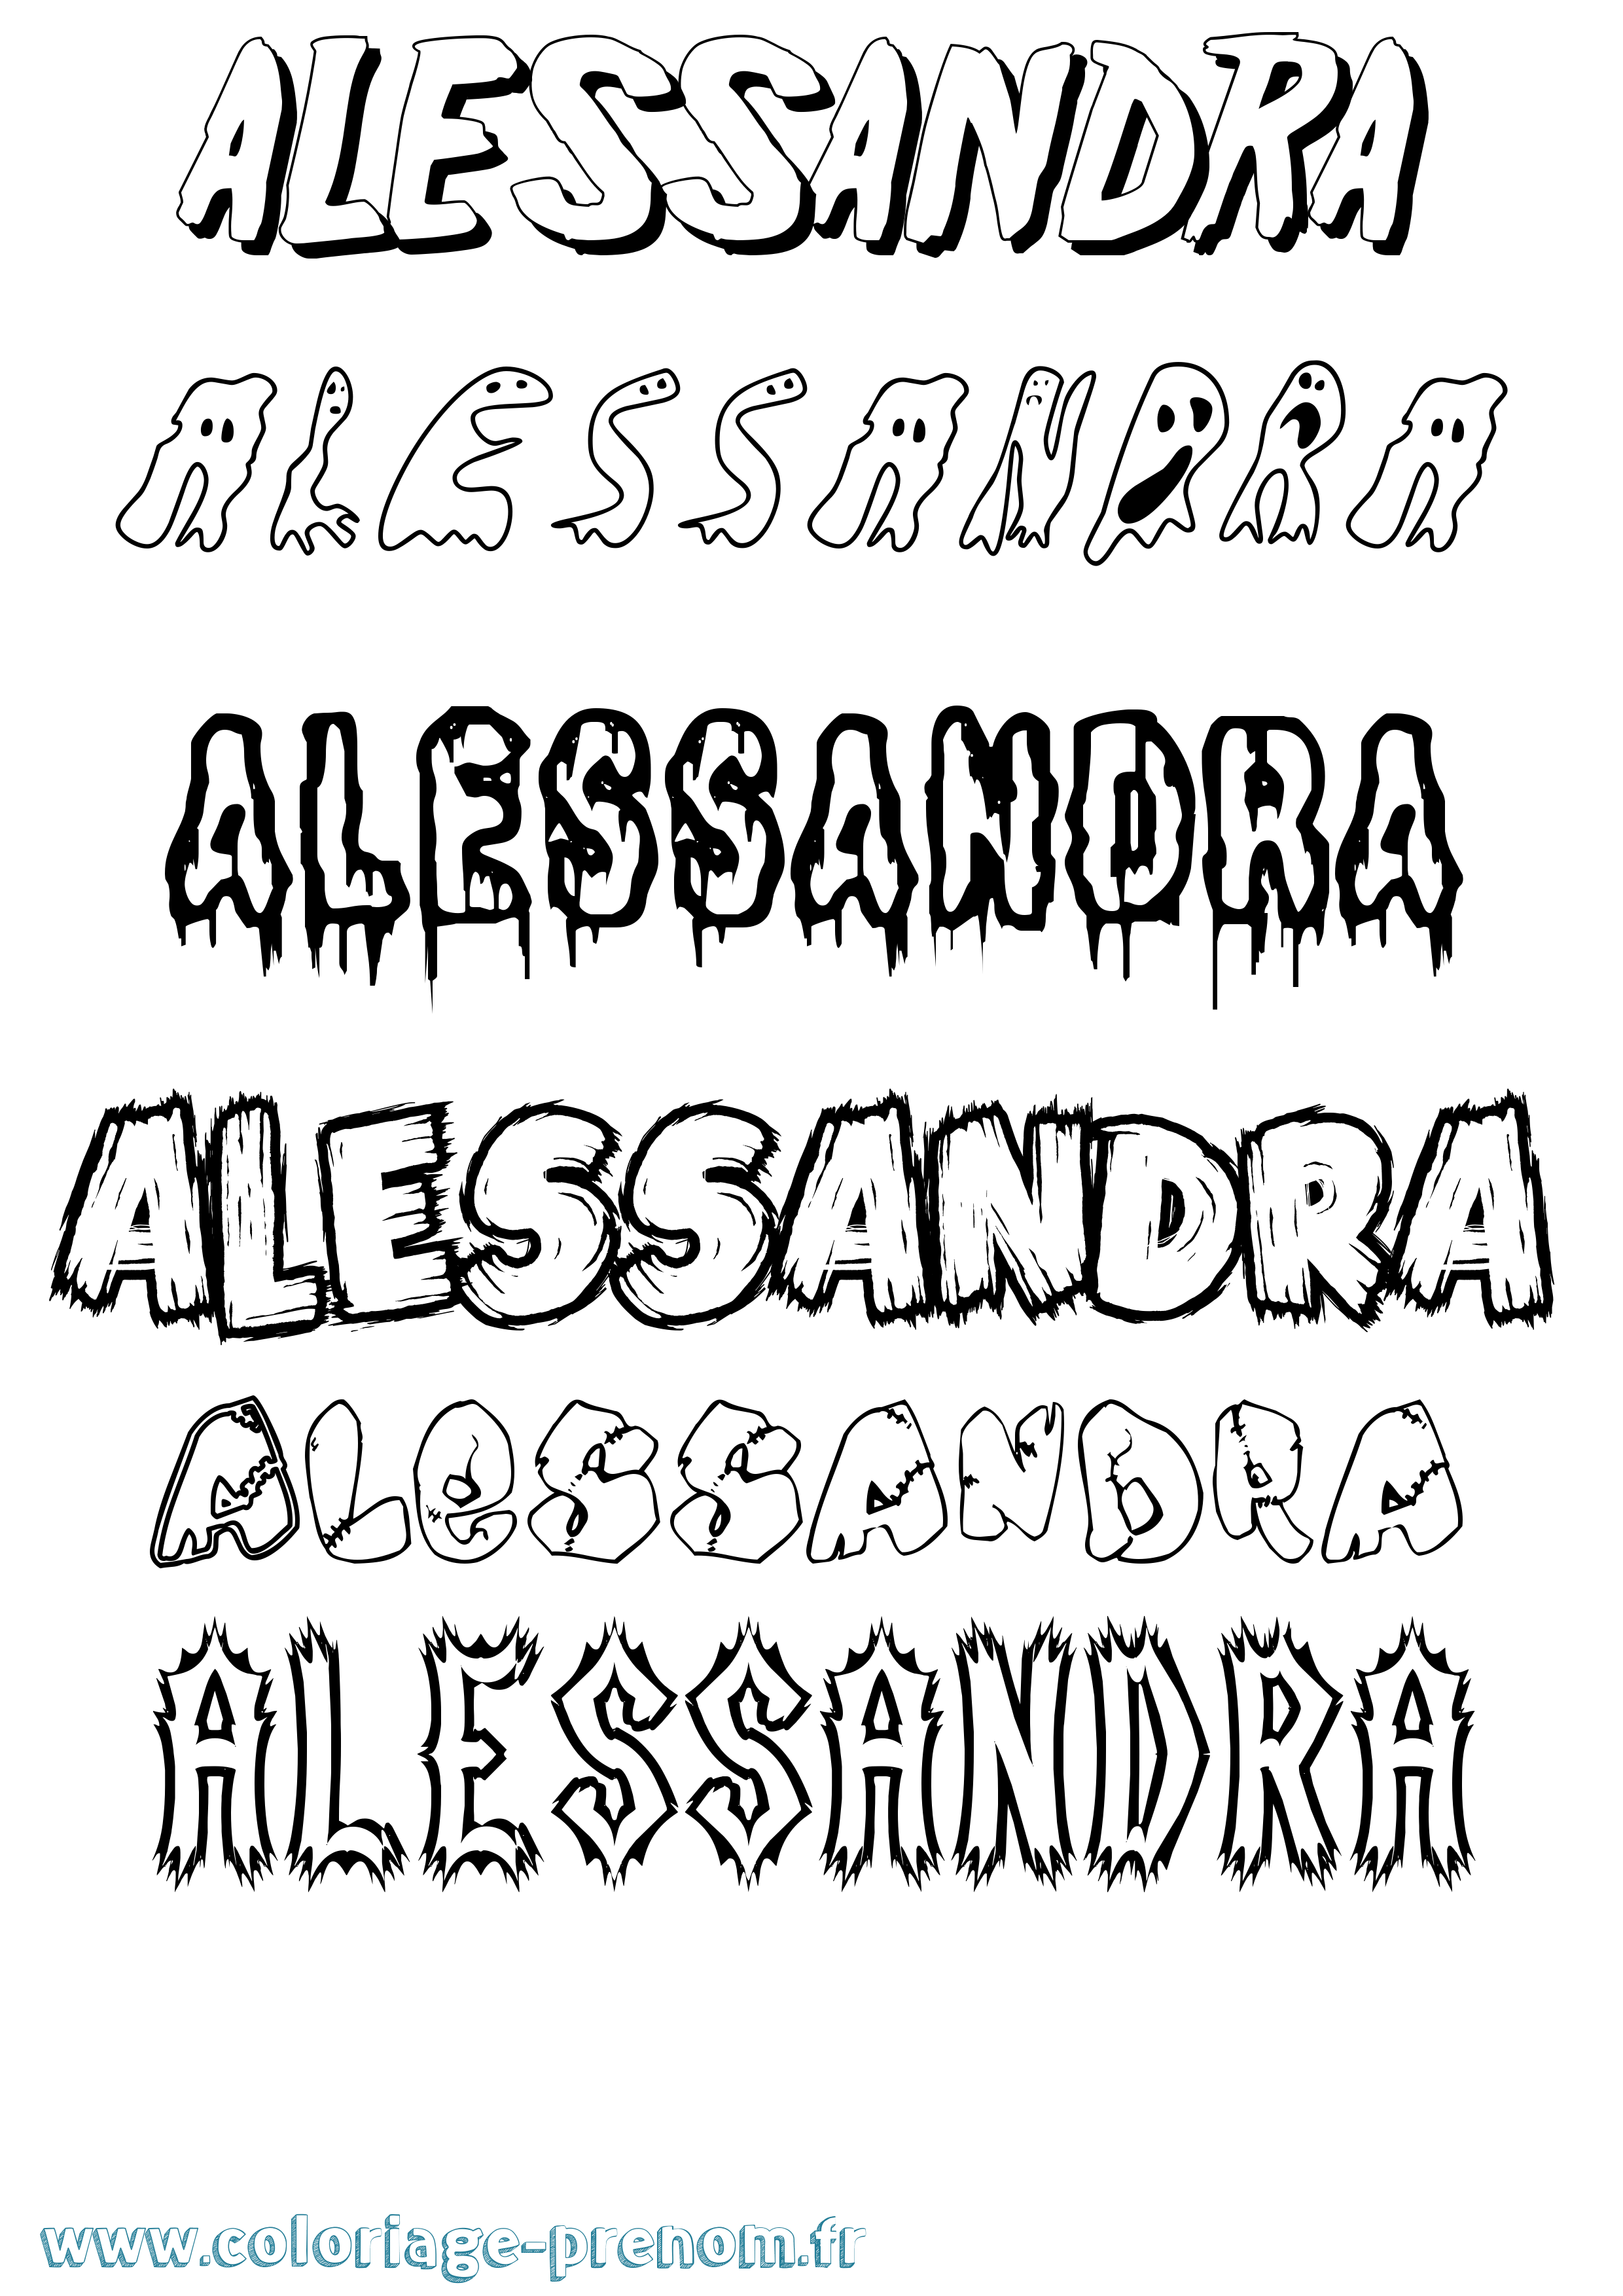 Coloriage prénom Alessandra Frisson